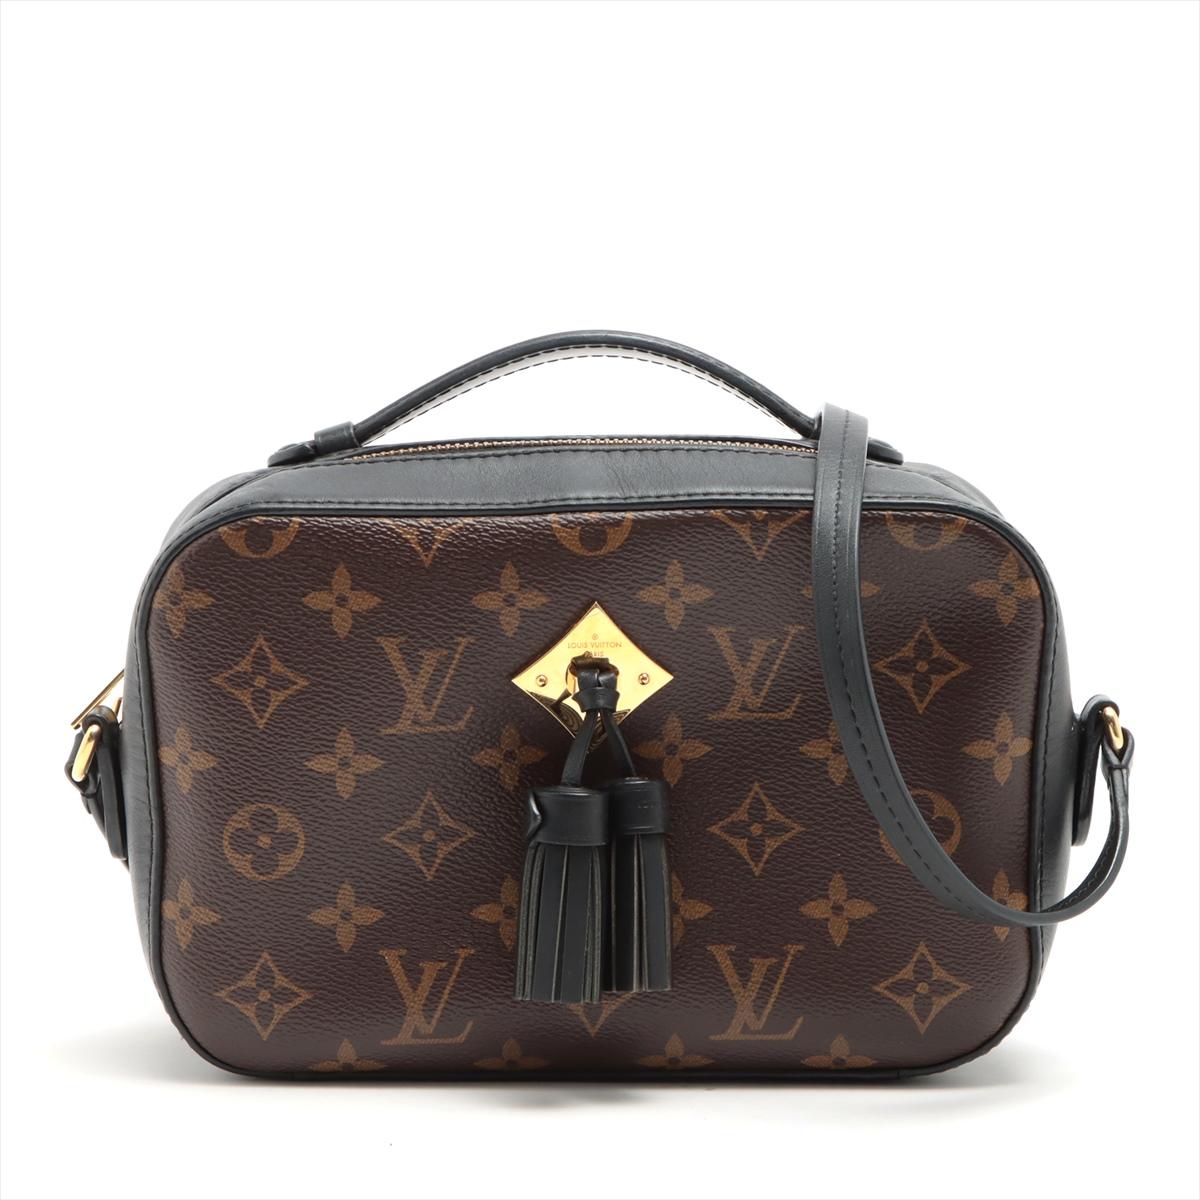 Le Monogram Saintonge de Louis Vuitton est un sac à bandoulière élégant et compact qui met en valeur la toile Monogram emblématique de la marque, reflétant une esthétique intemporelle et sophistiquée. Méticuleusement confectionné, le sac arbore le